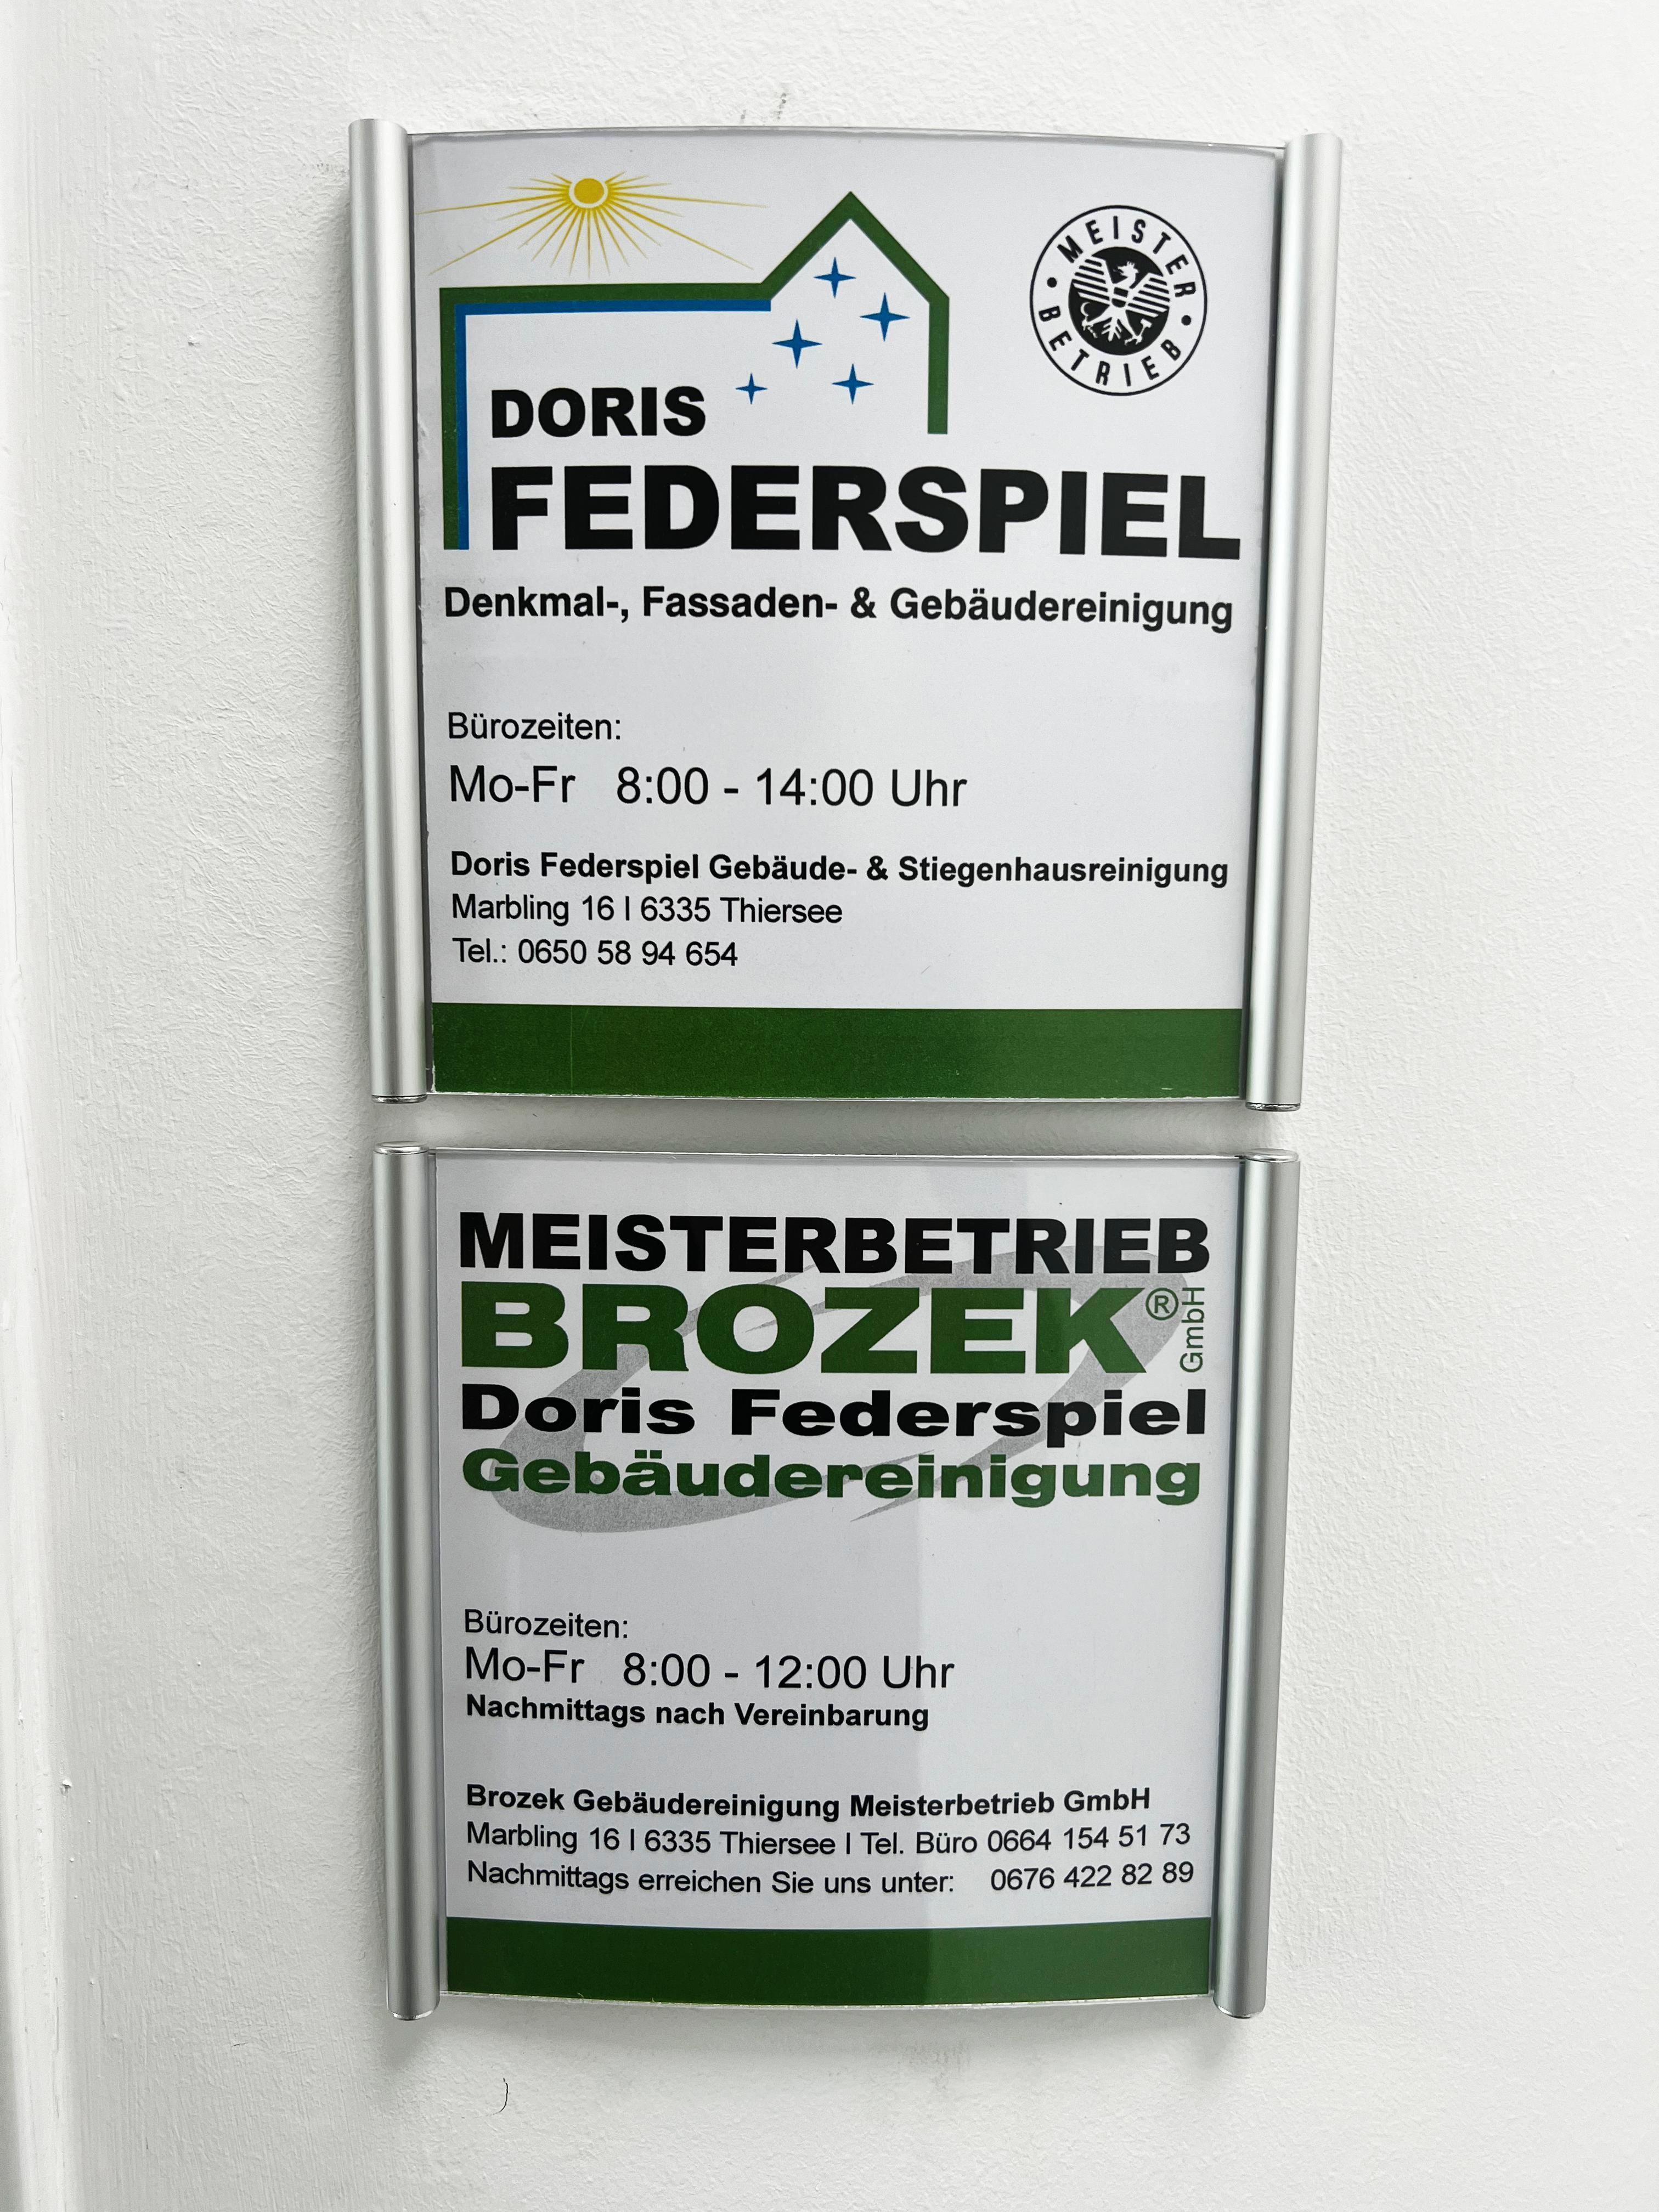 Vorschau - Foto 1 von BROZEK GEBÄUDEREINIGUNG Meisterbetrieb GmbH FEDERSPIEL DORIS